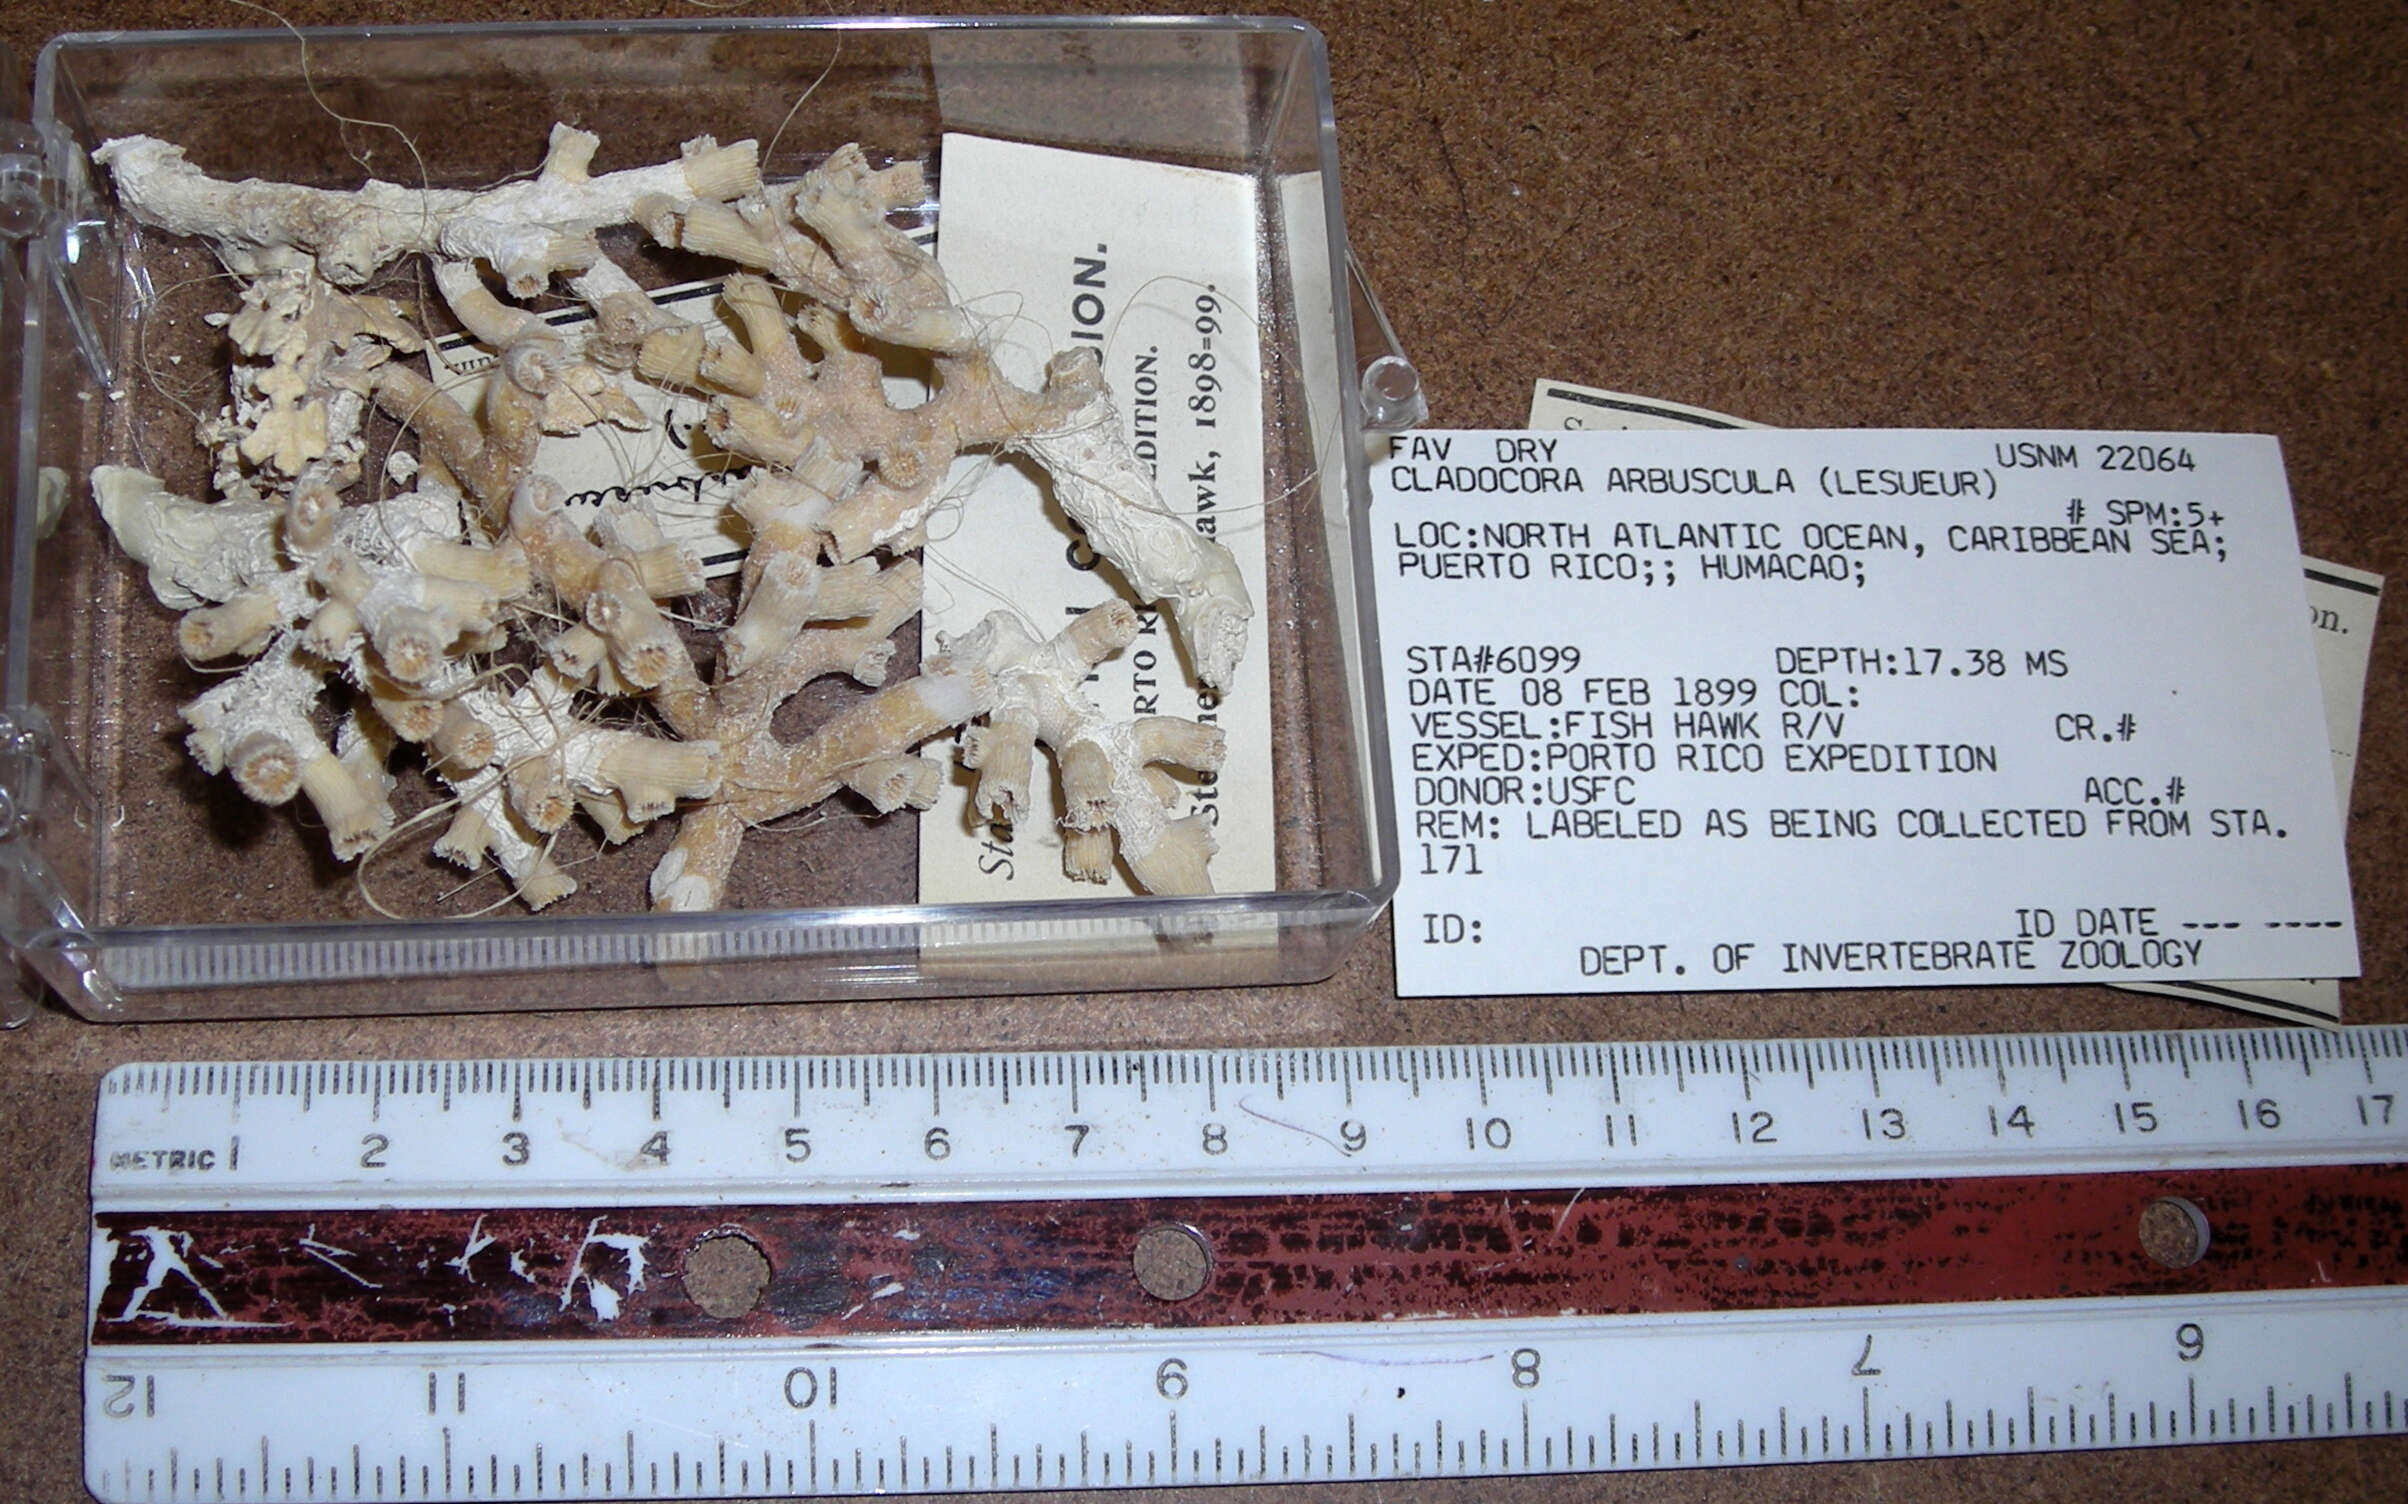 Image de <i>Cladocora arbuscula</i>